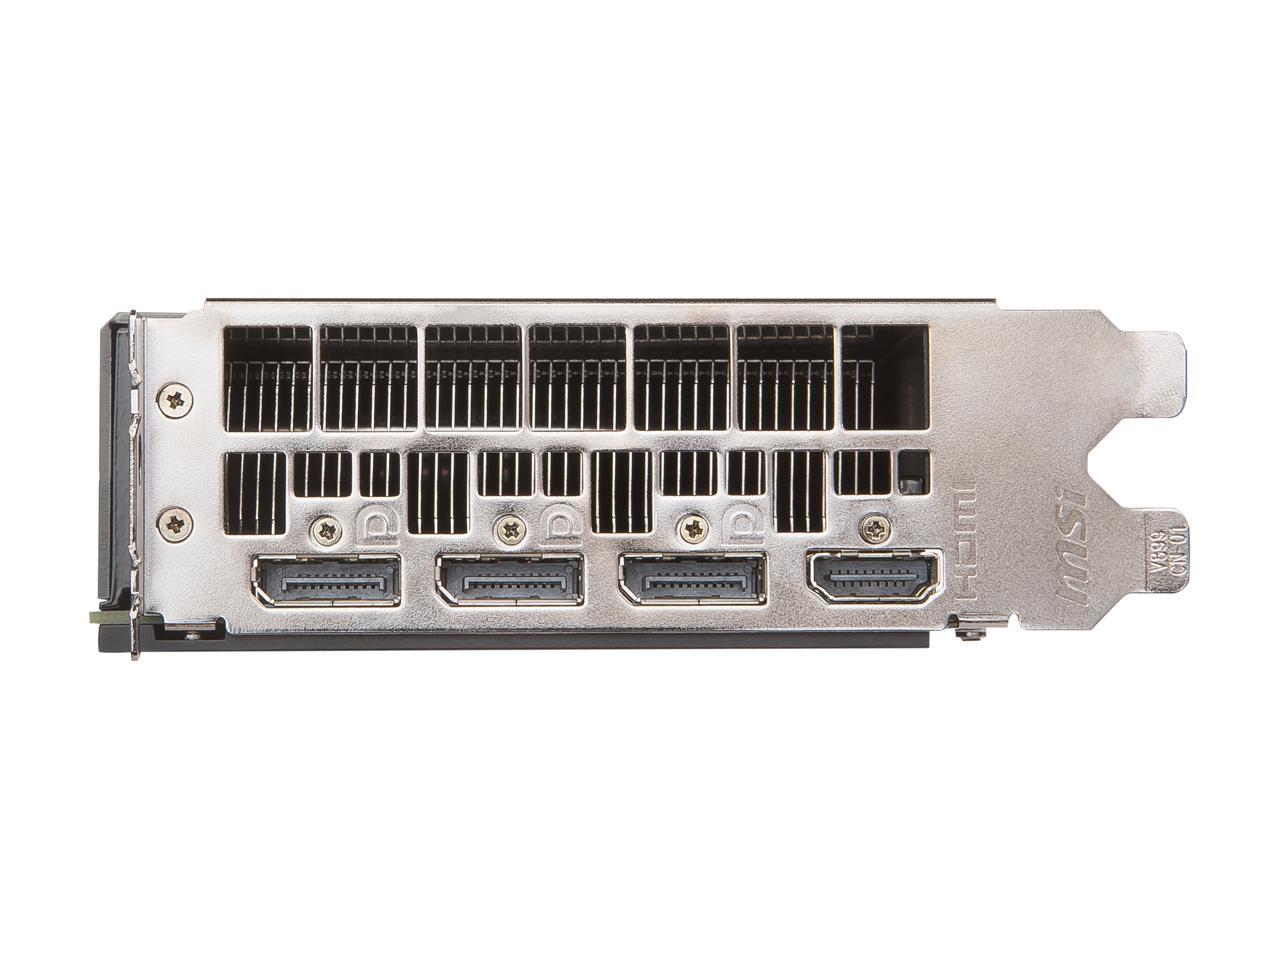 MSI Radeon RX Vega 56 8GB HBM2 PCI Express x16 CrossFireX Support ATX Video  Card RX Vega 56 Air Boost 8G OC